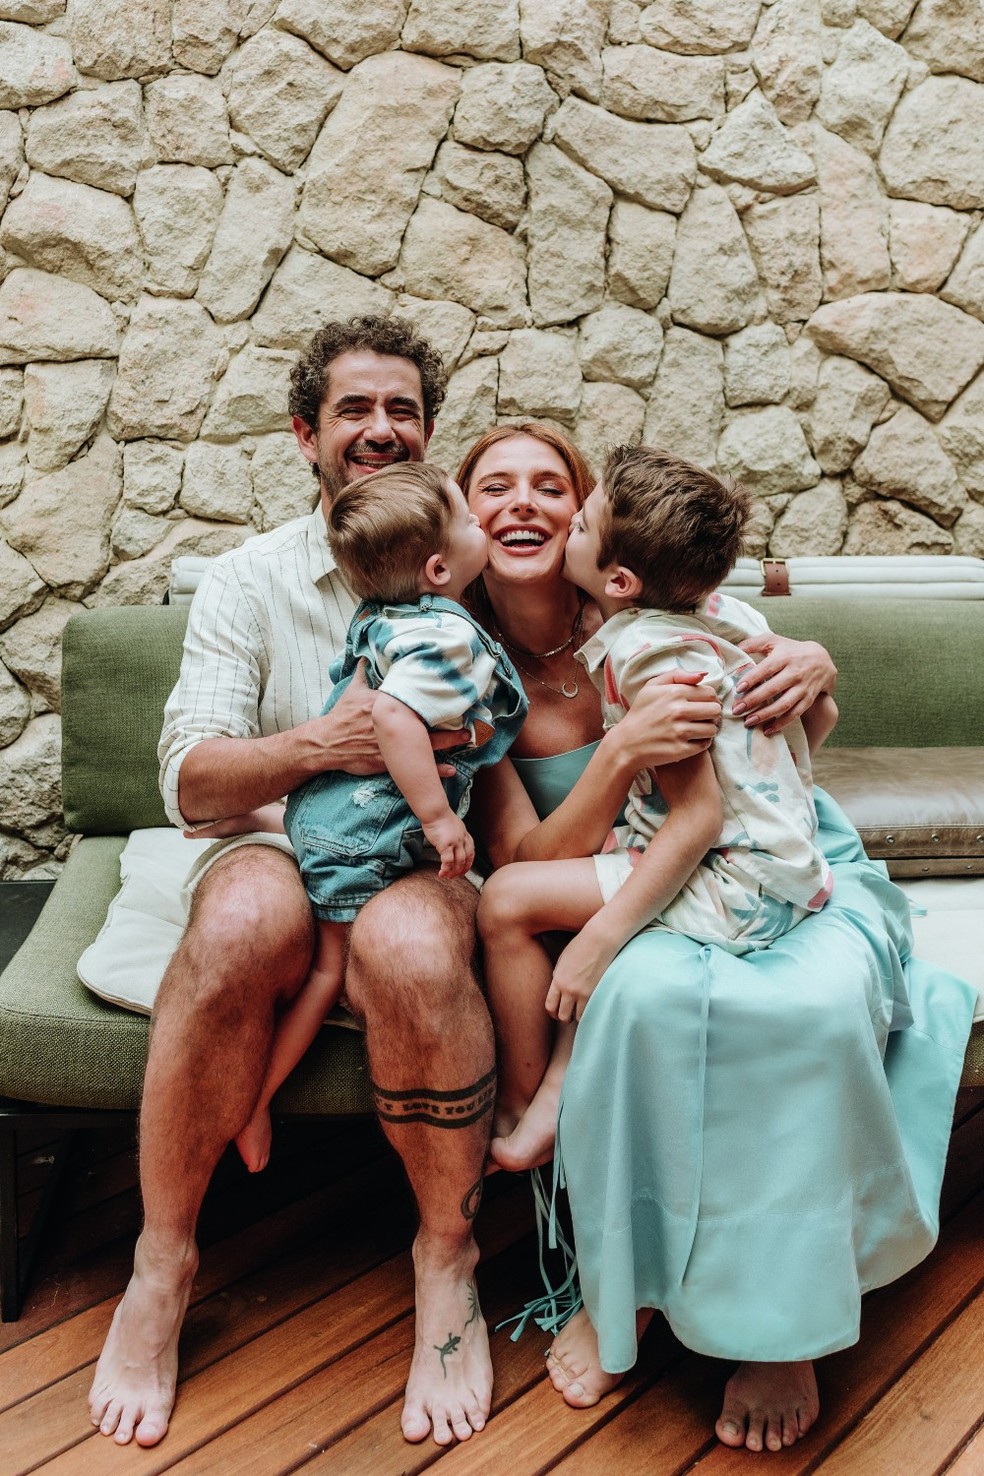 Paternidade afetiva: conheça 9 perfis de pais no Instagram